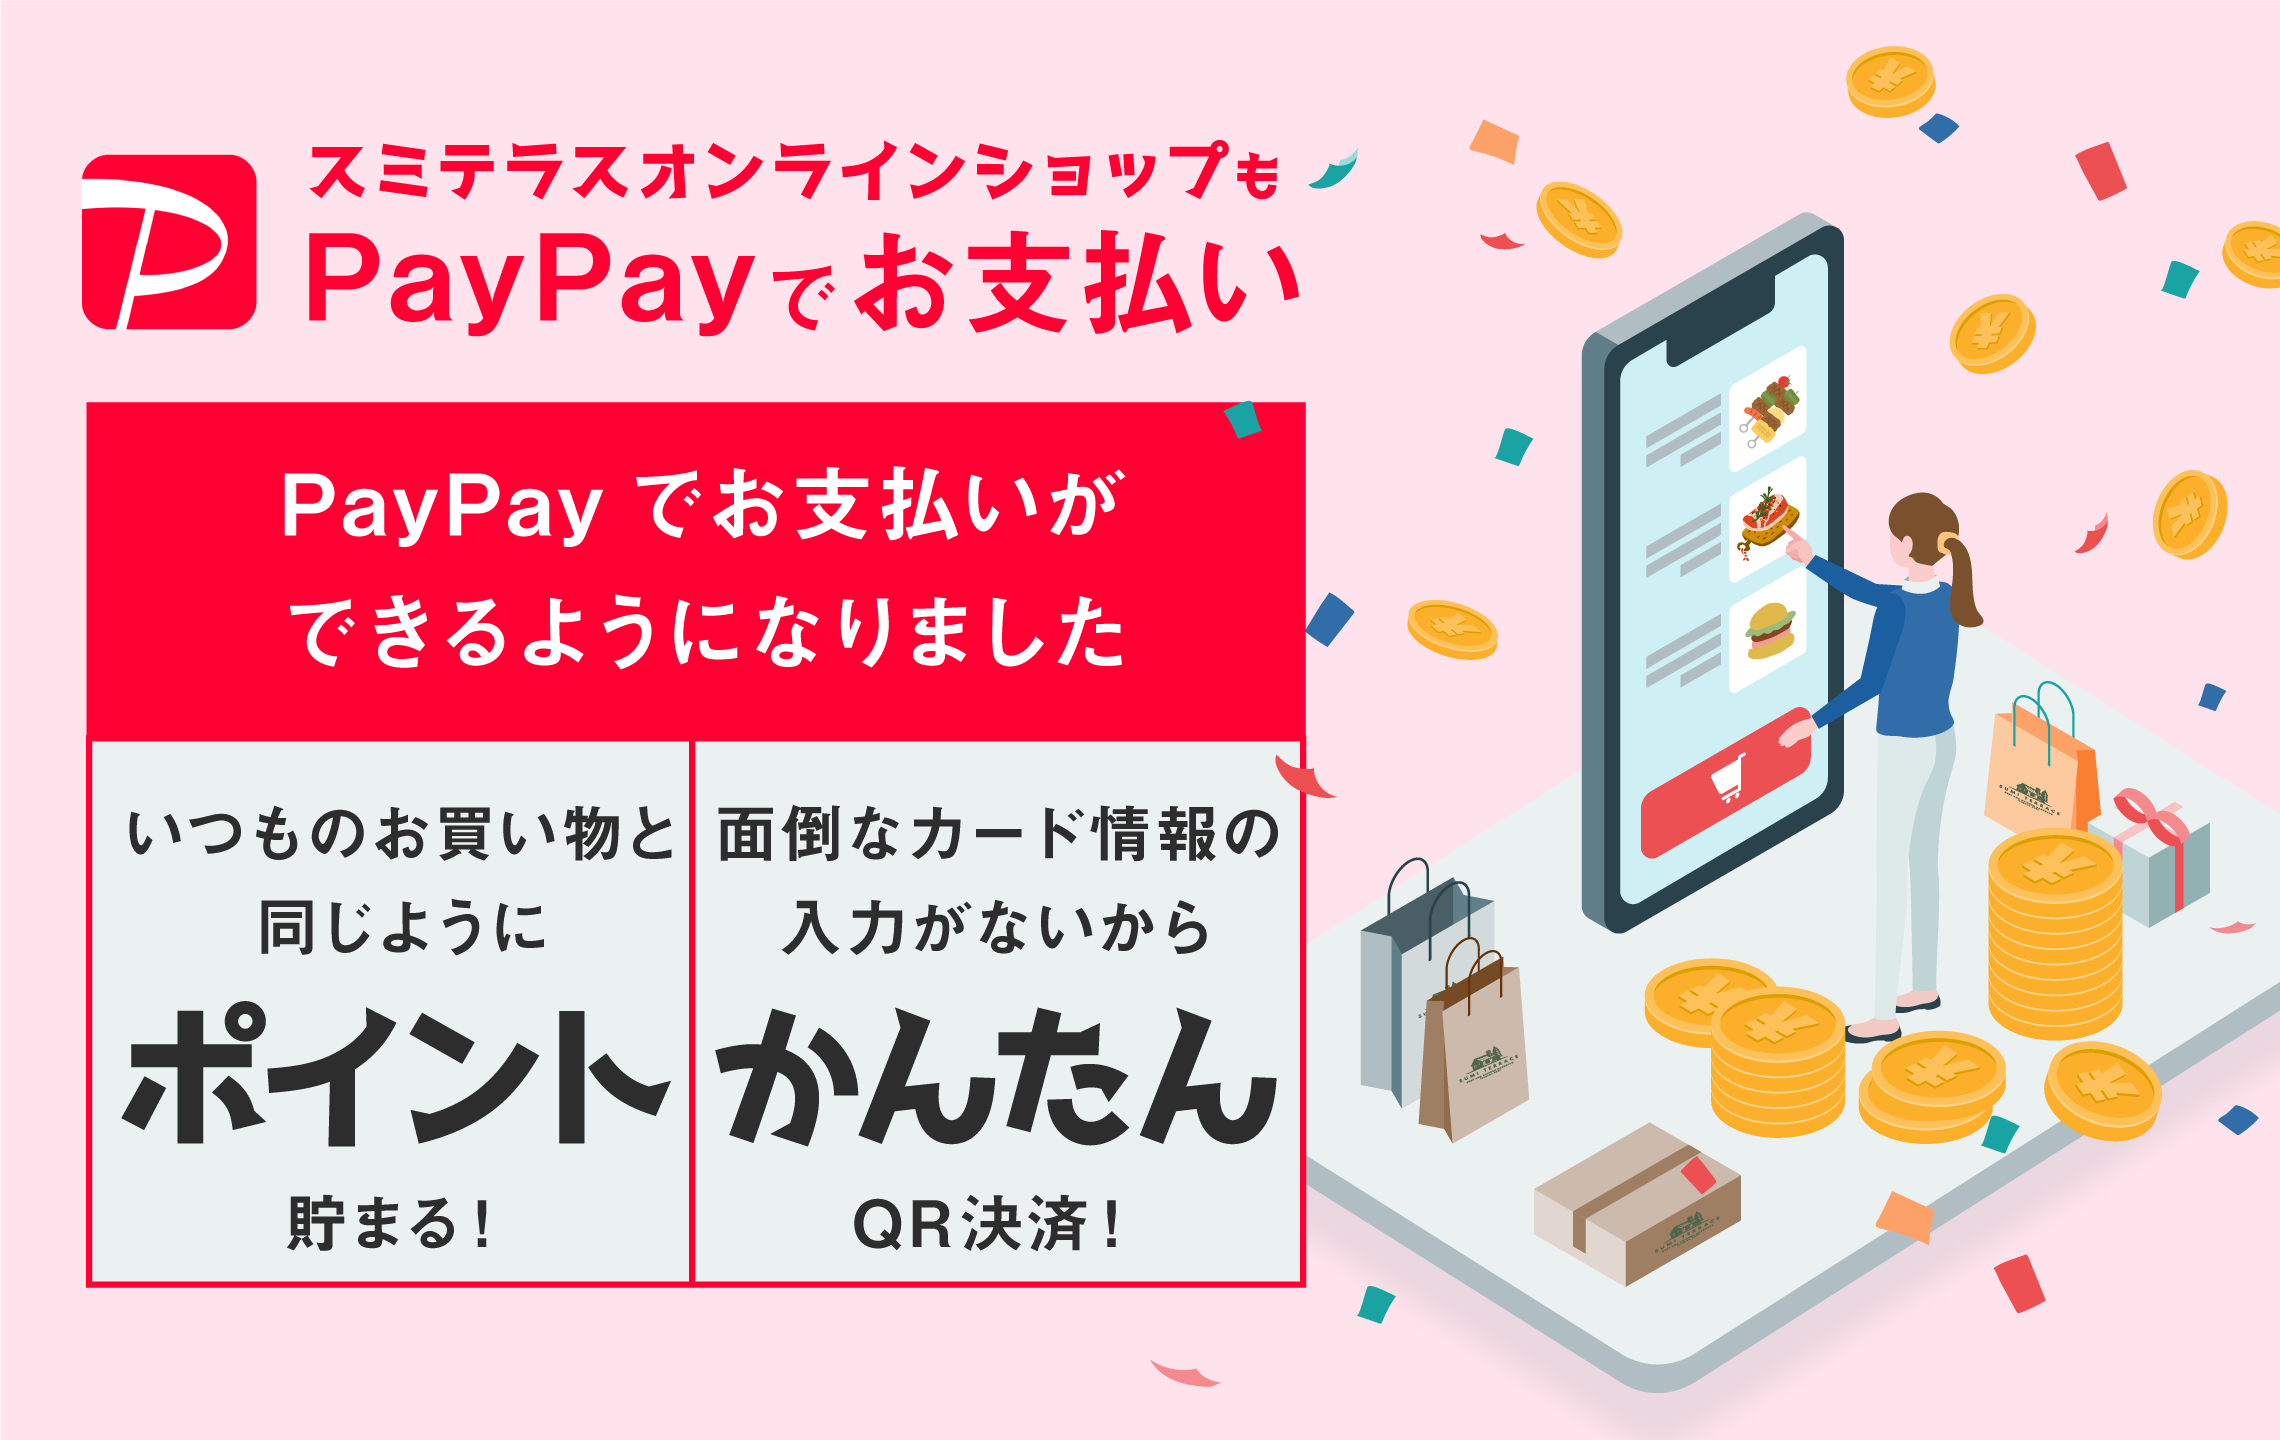 スミテラスオンラインショップがPayPayでの支払いがご利用いただけるようになりました